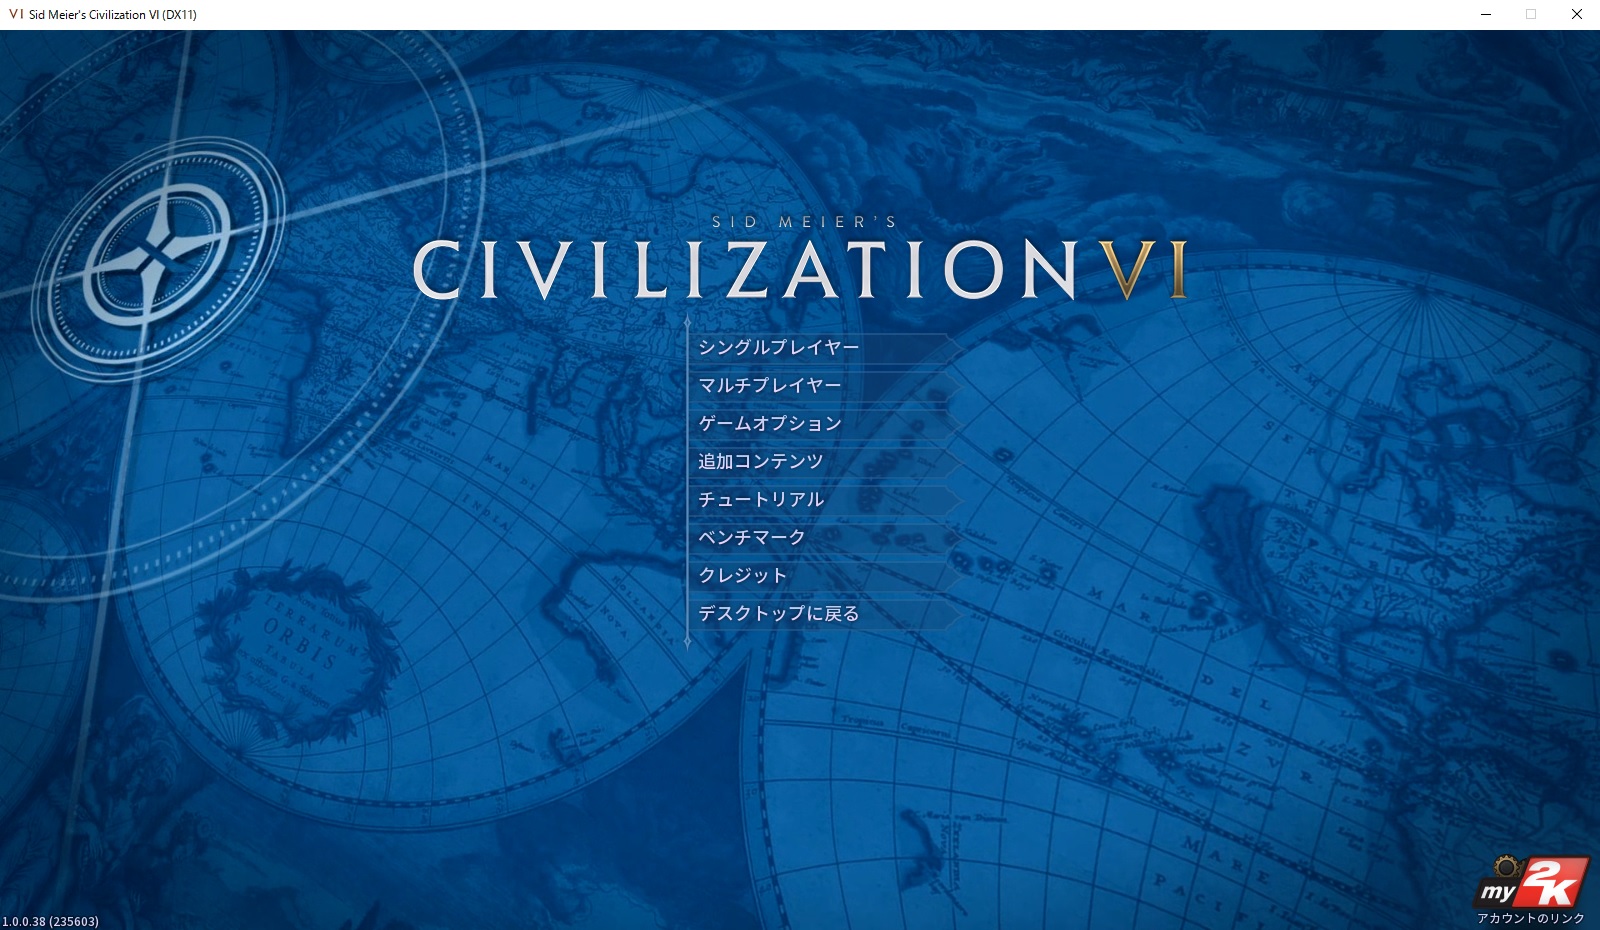 civilization vi steam id issue